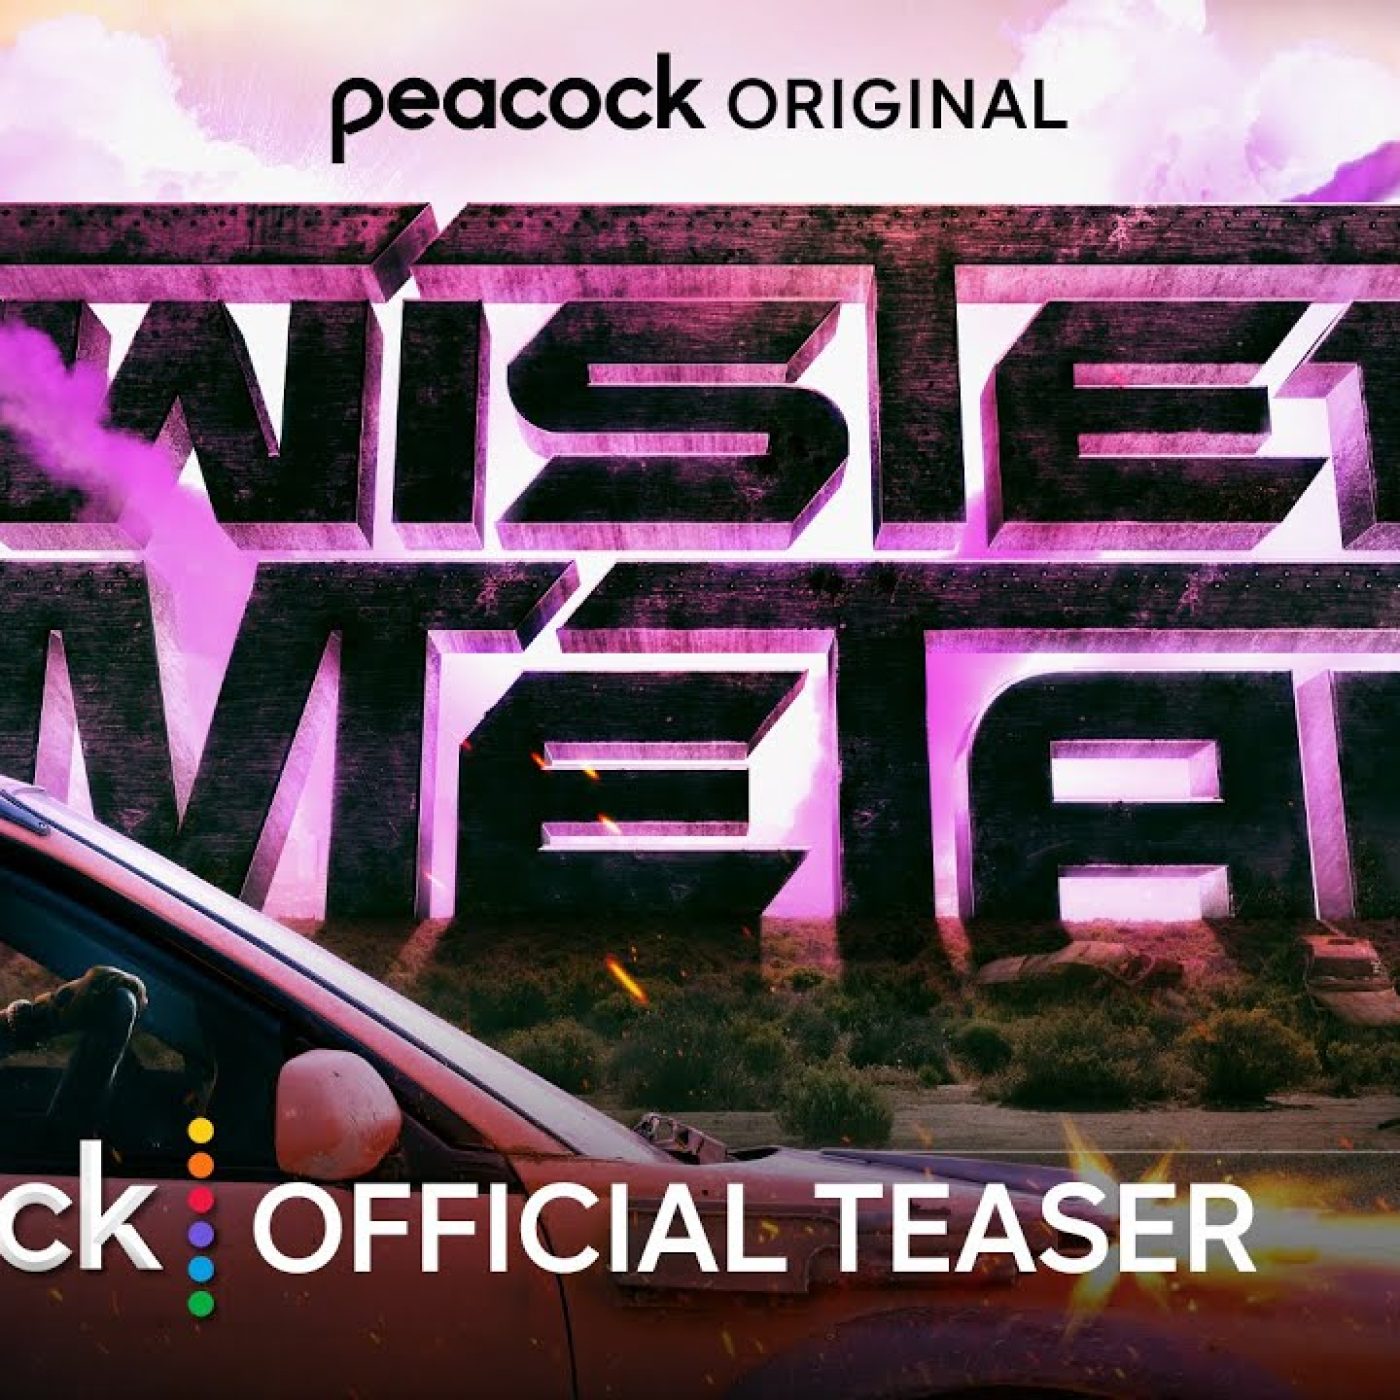 Série Twisted Metal recebe trailer oficial